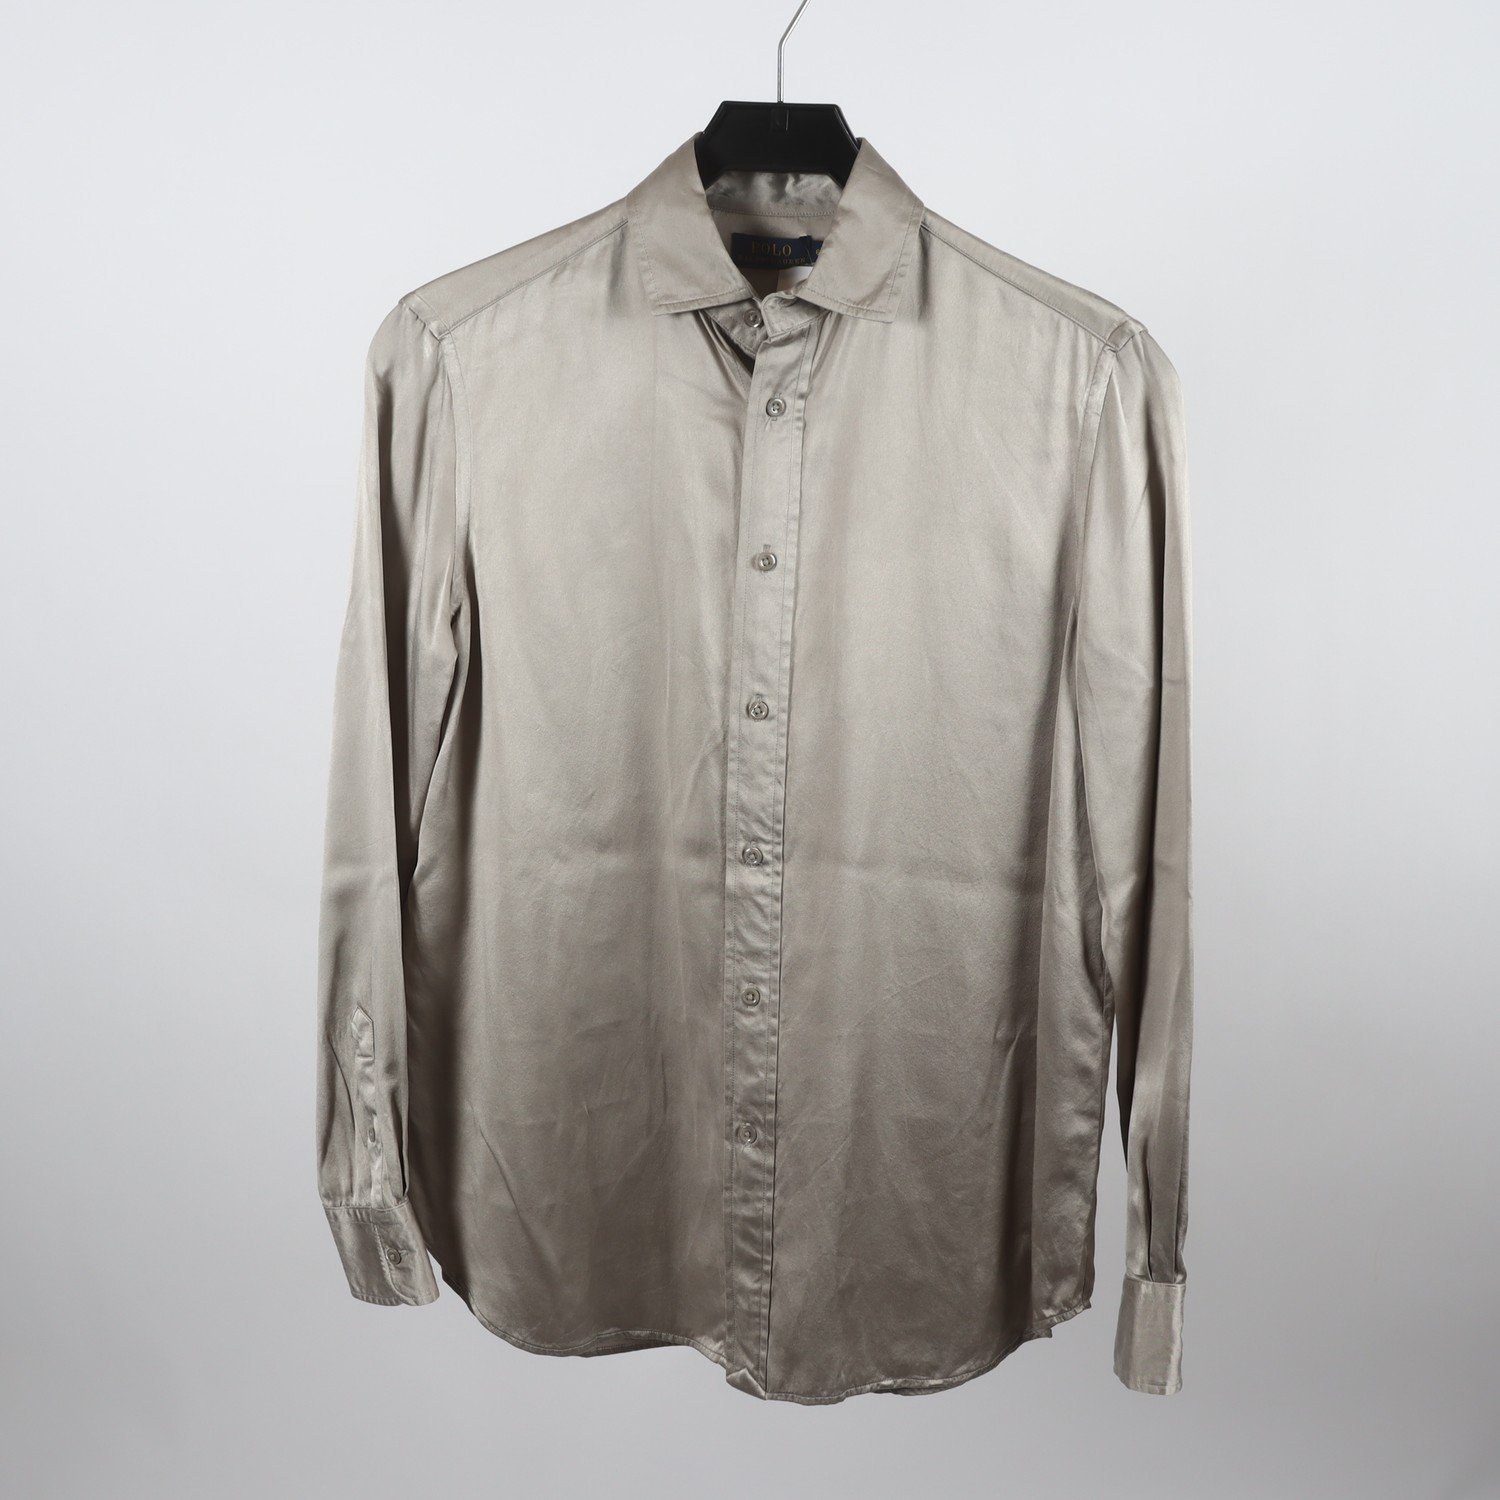 Blus, Ralph Lauren, silvergrå, 100% silk, stl. 6 (S)